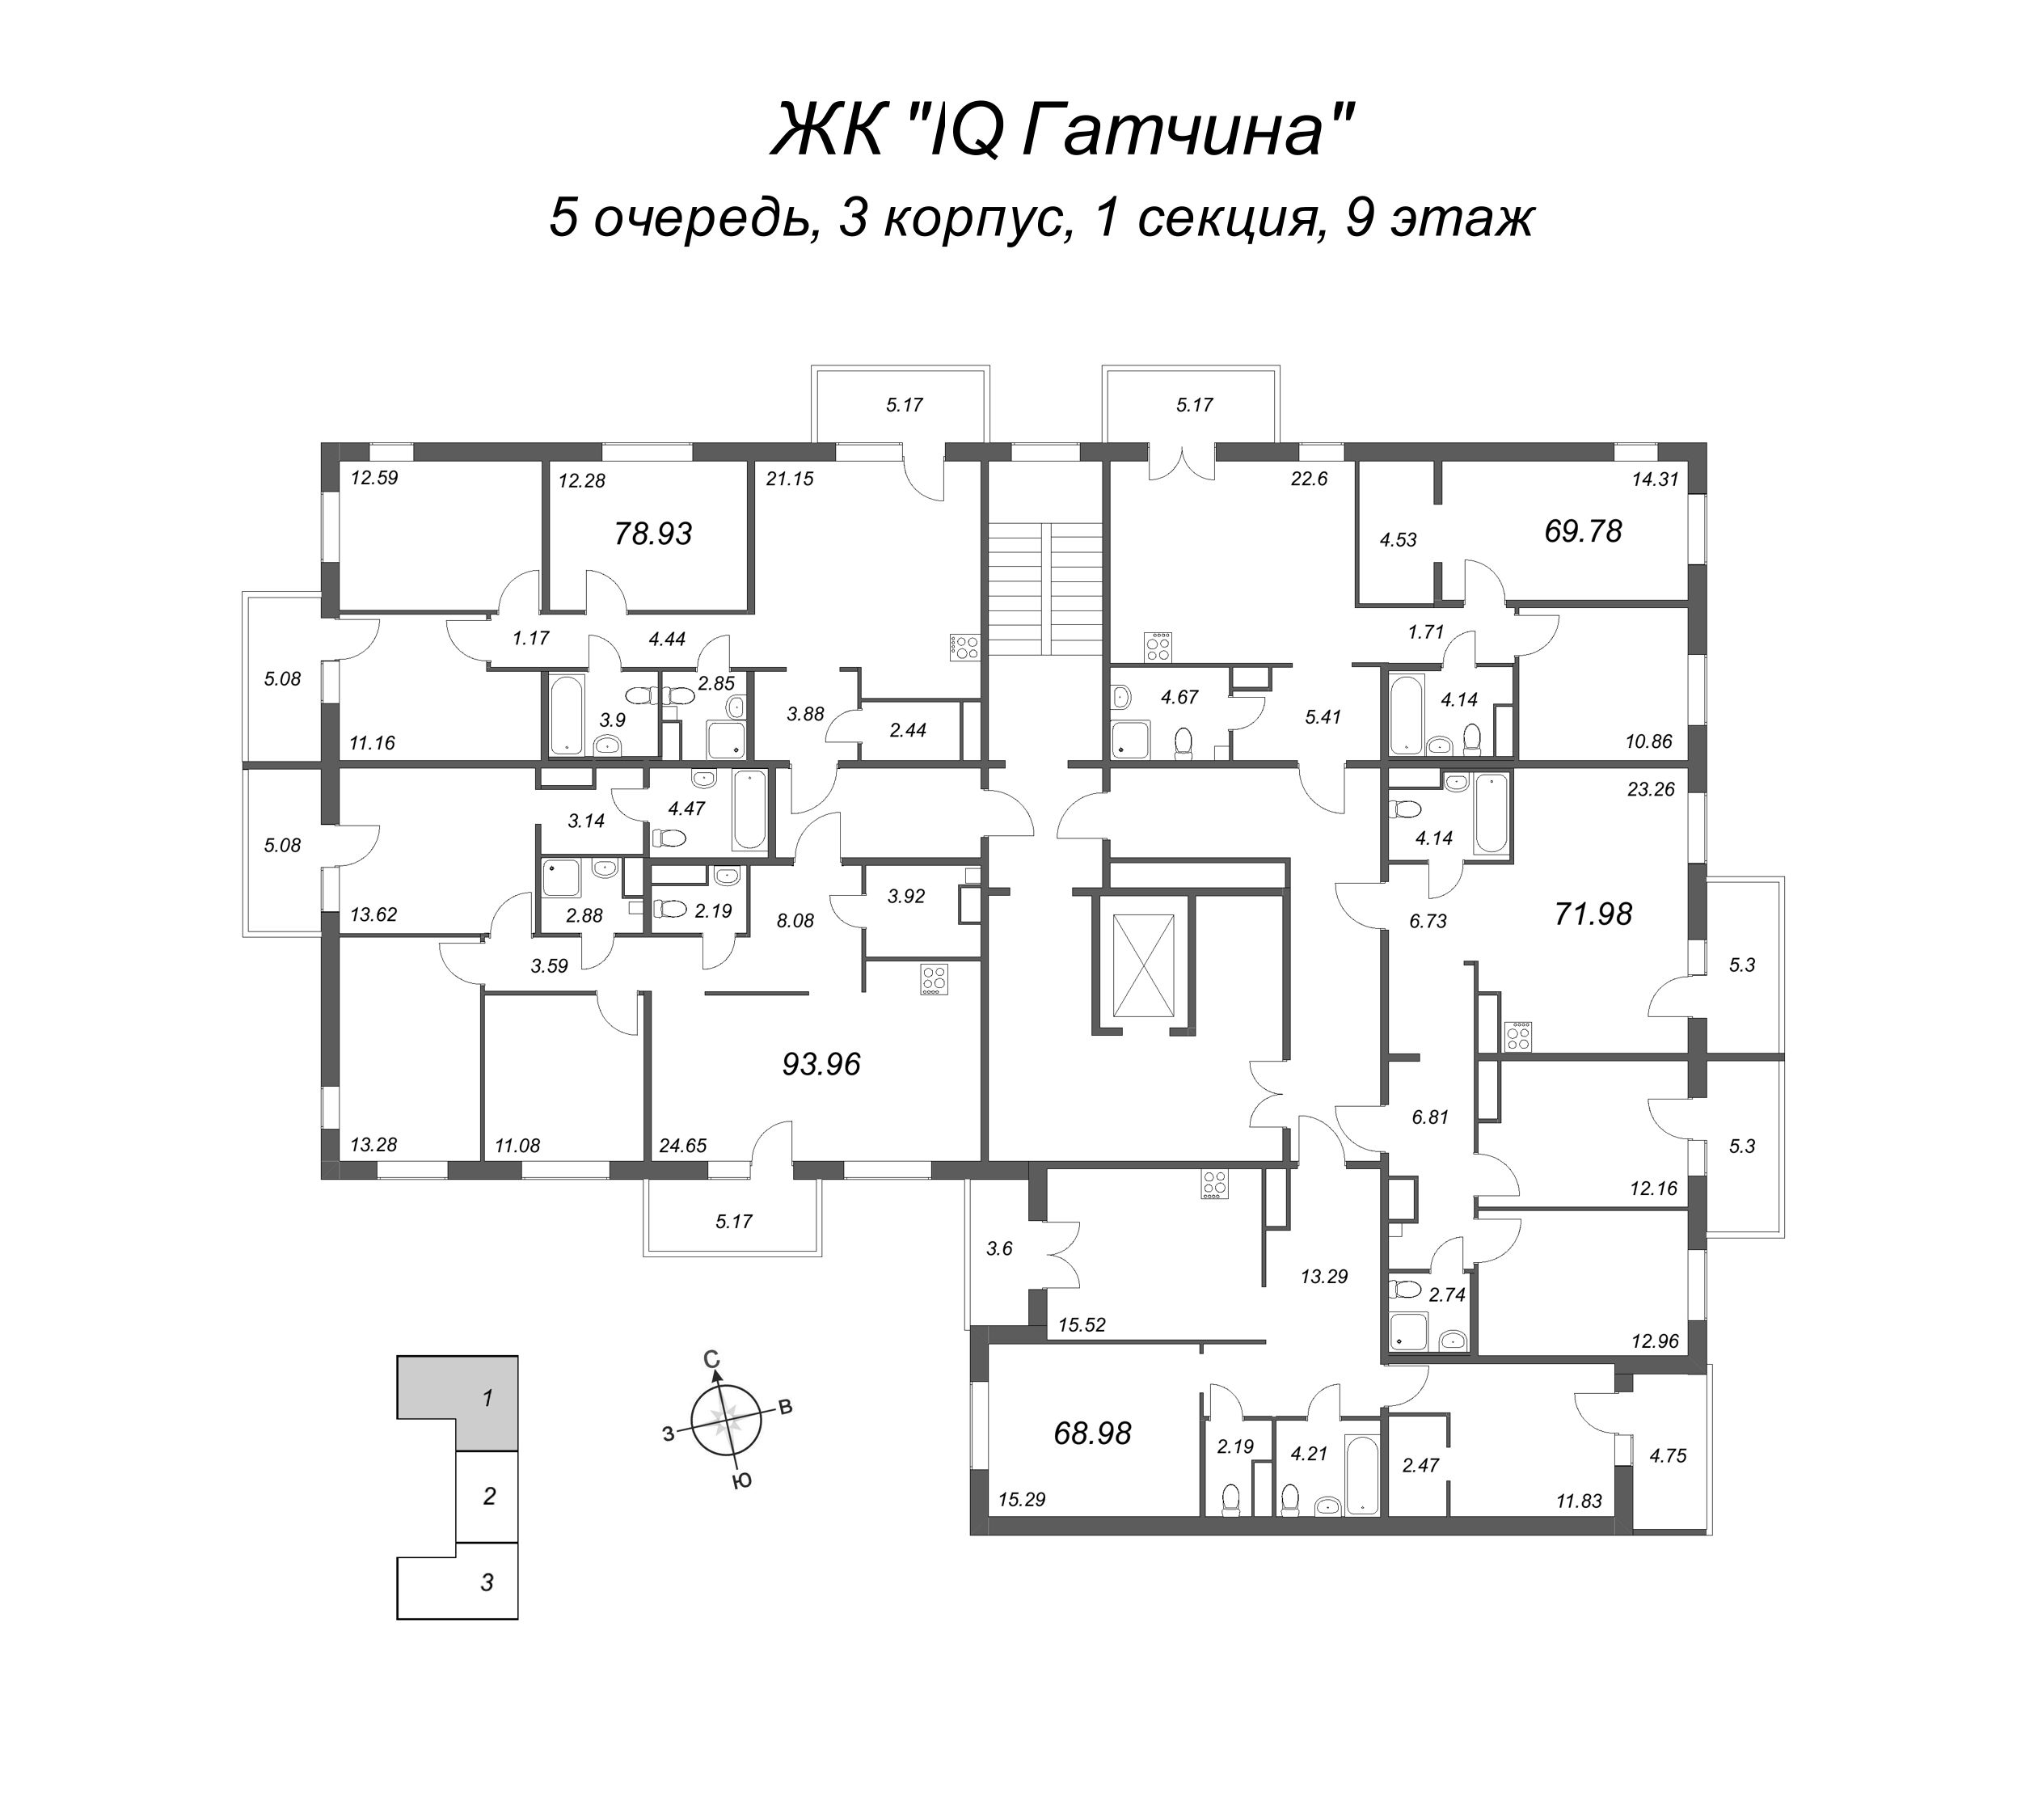 3-комнатная (Евро) квартира, 69.64 м² в ЖК "IQ Гатчина" - планировка этажа